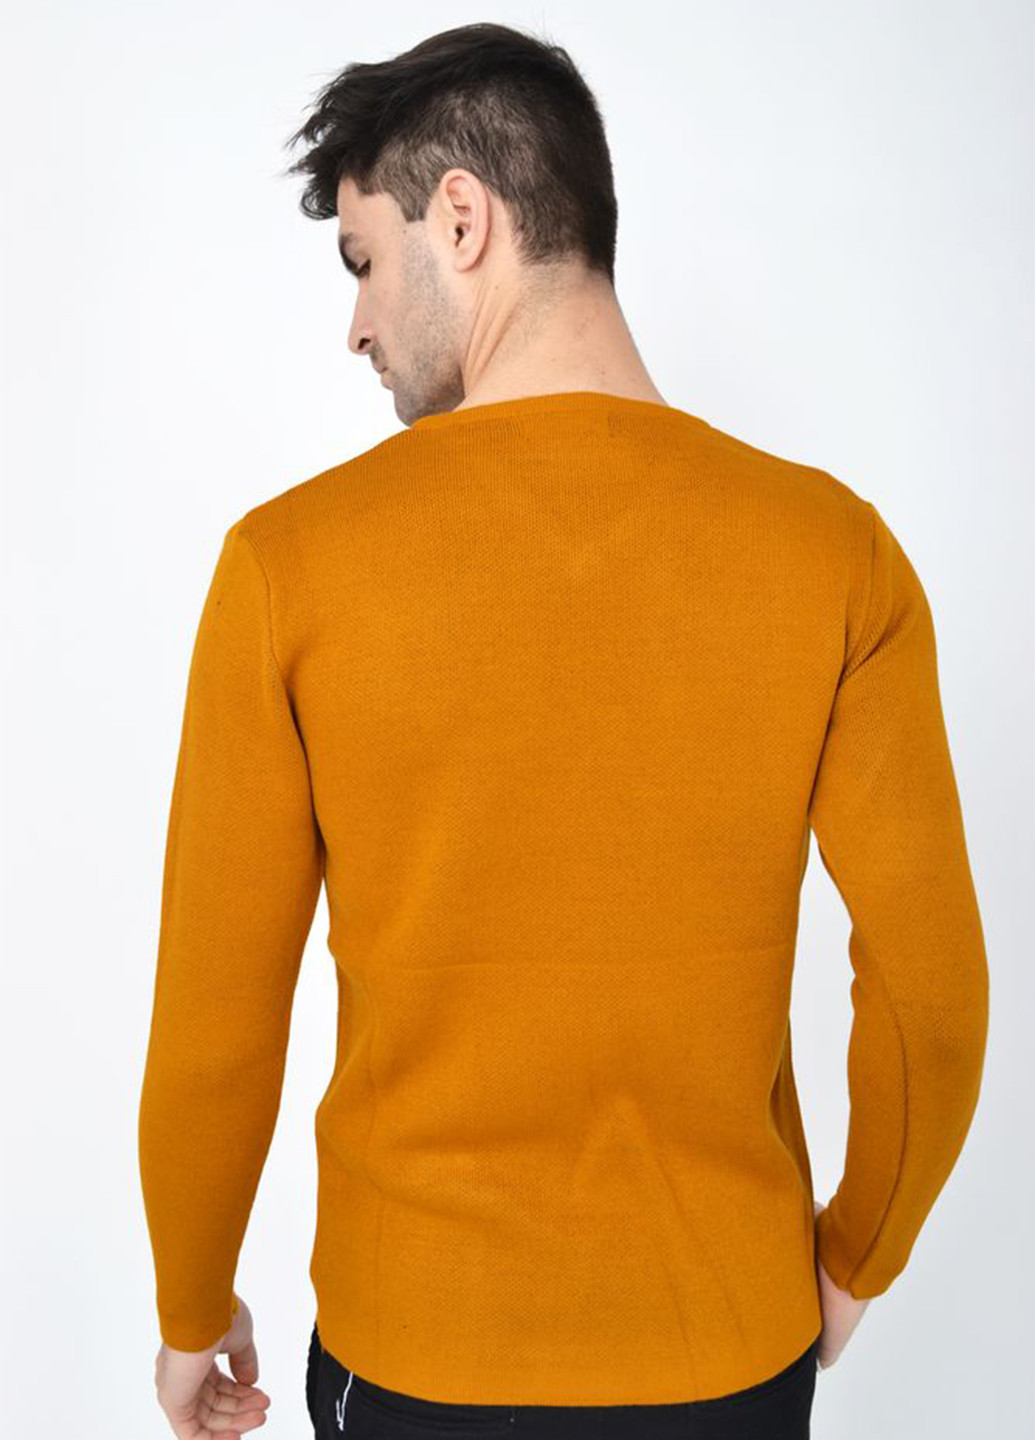 Горчичный демисезонный пуловер пуловер Ager